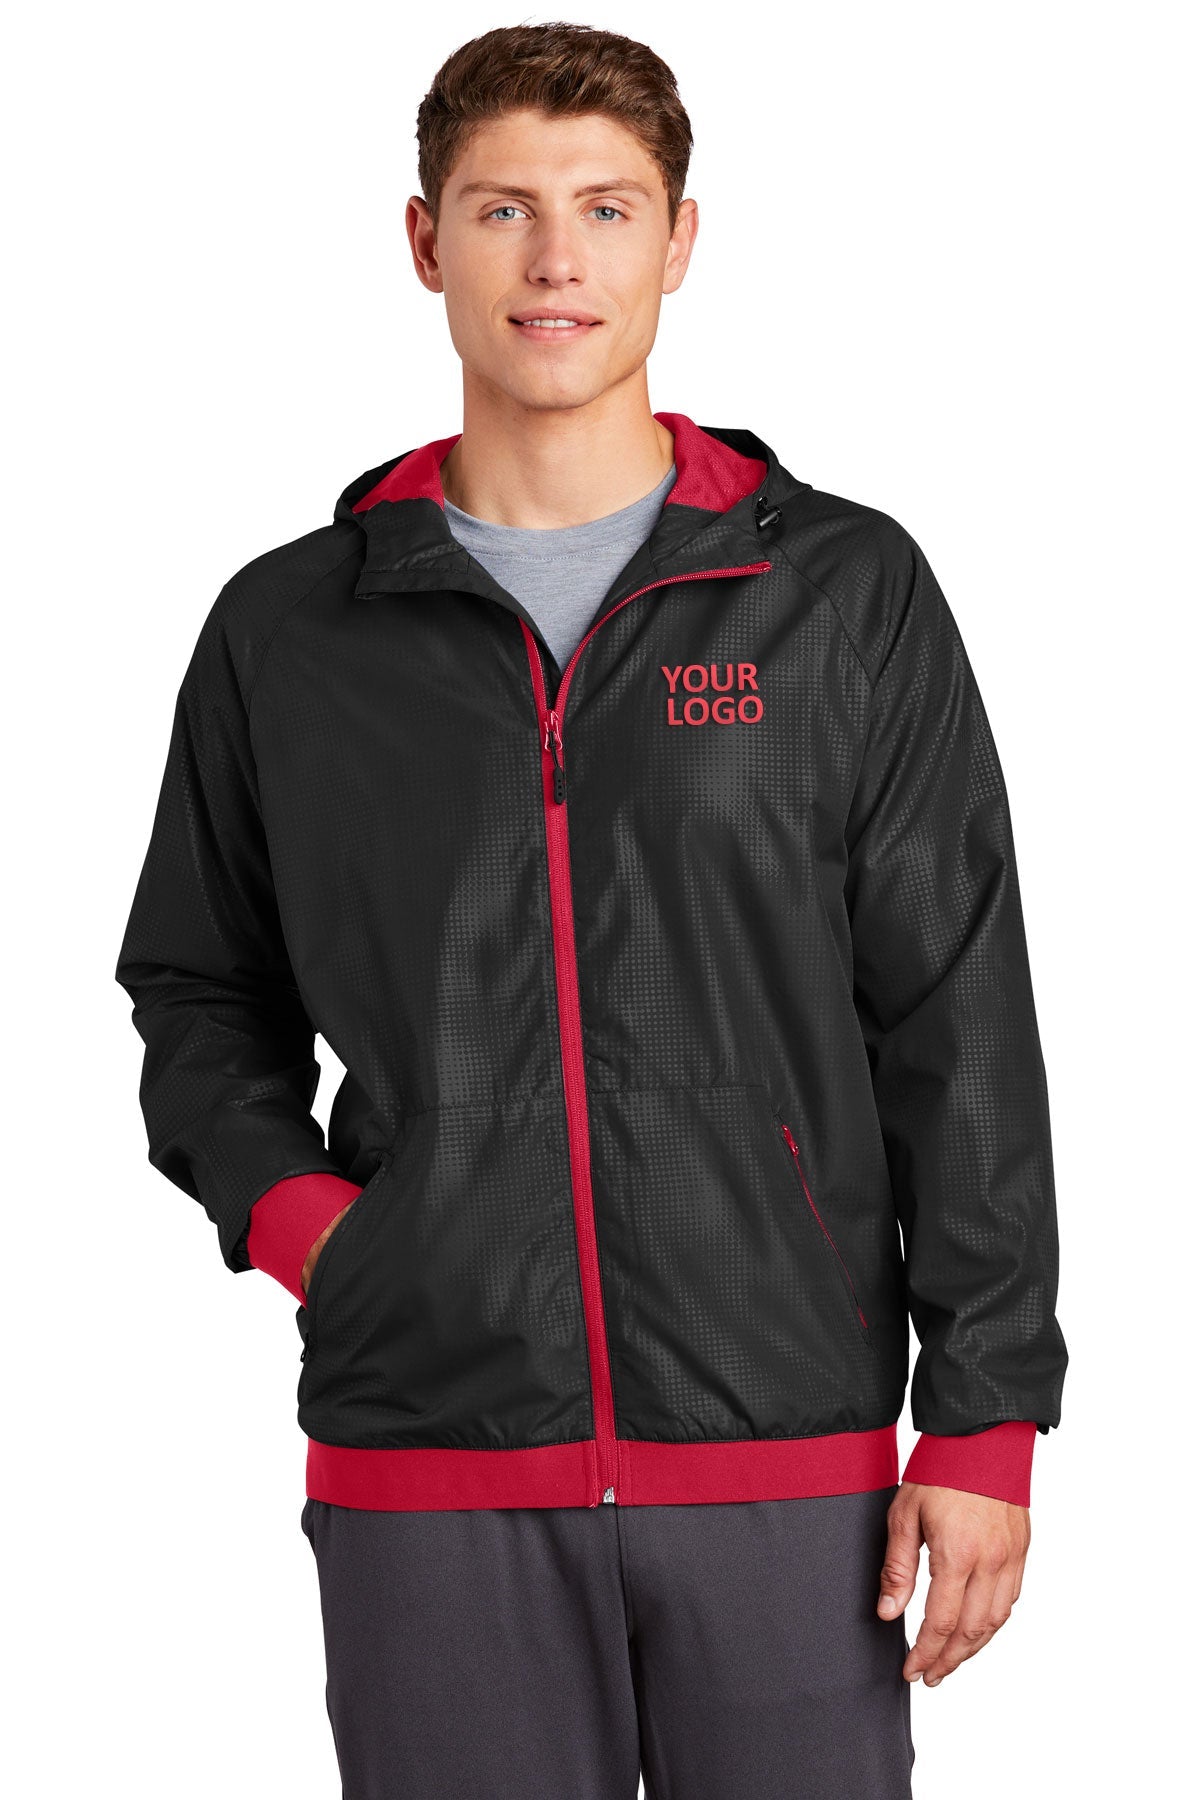 Sport-Tek Black/ True Red JST53 business jackets with logo